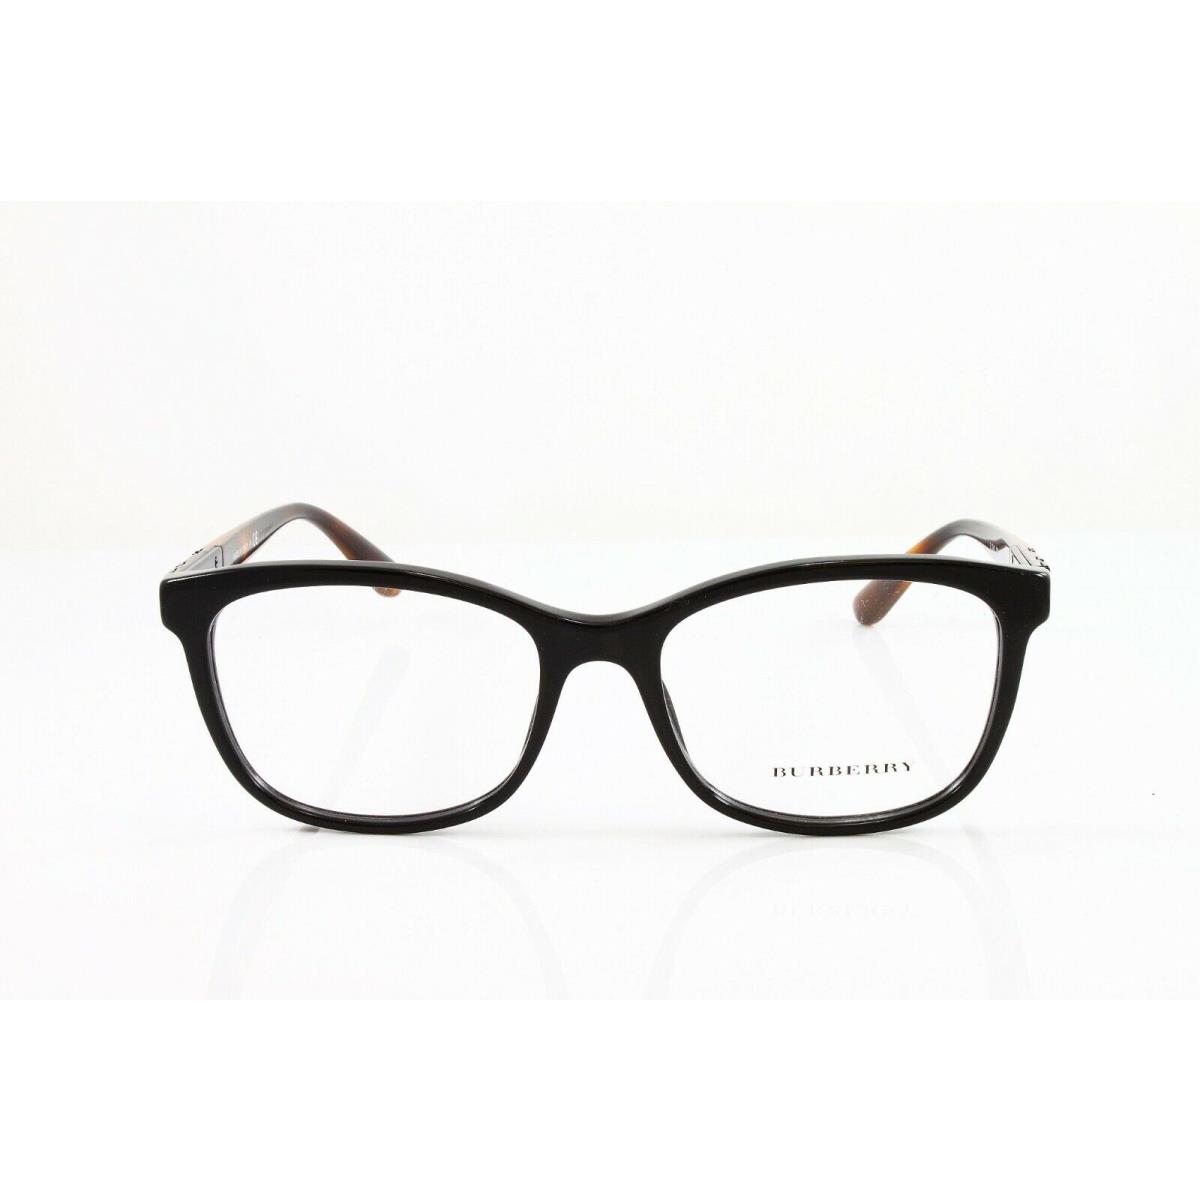 Burberry eyeglasses Frames - Black Frame 0